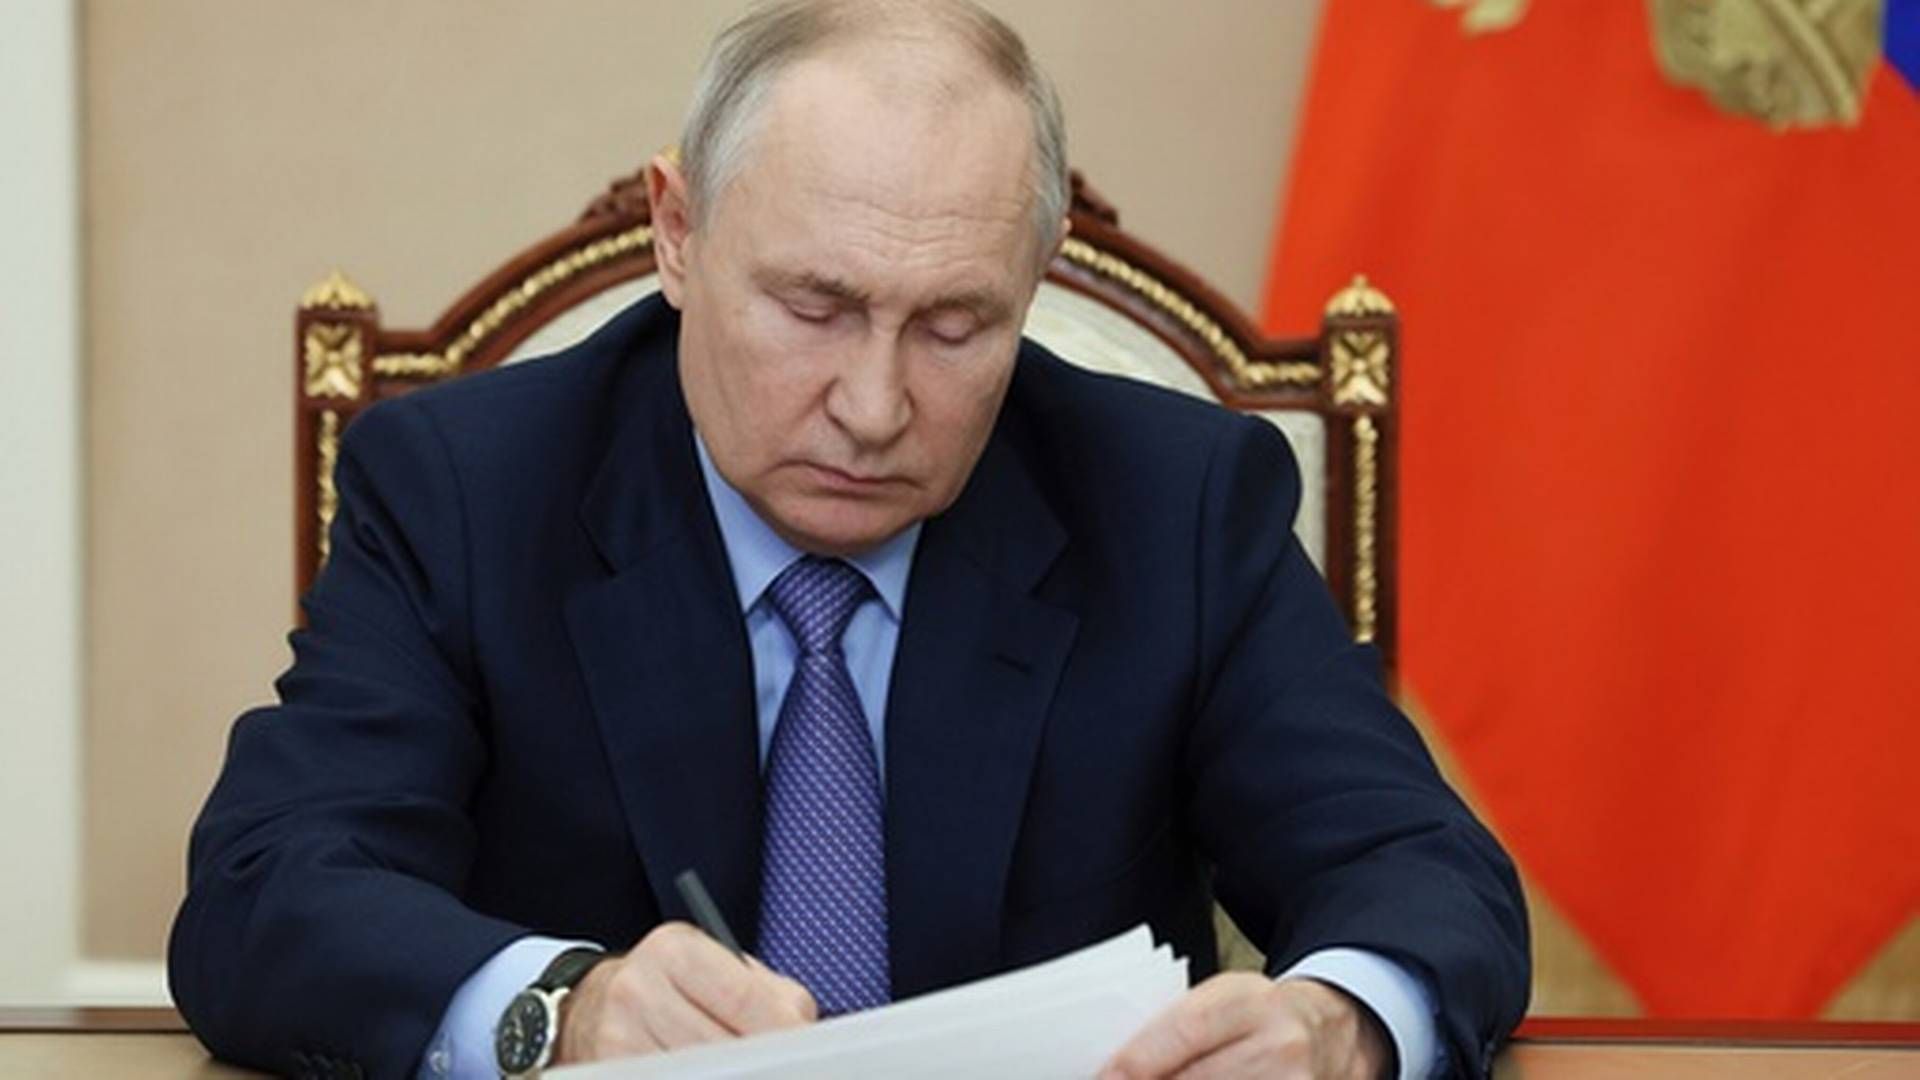 BEKYMRET: Putin oppfordrer blant annet regjeringen til å samarbeide tettere med oljeselskapene for å senke prisene. | Foto: Mikhail Metzel / Sputnik / Kreml via AP / NTB